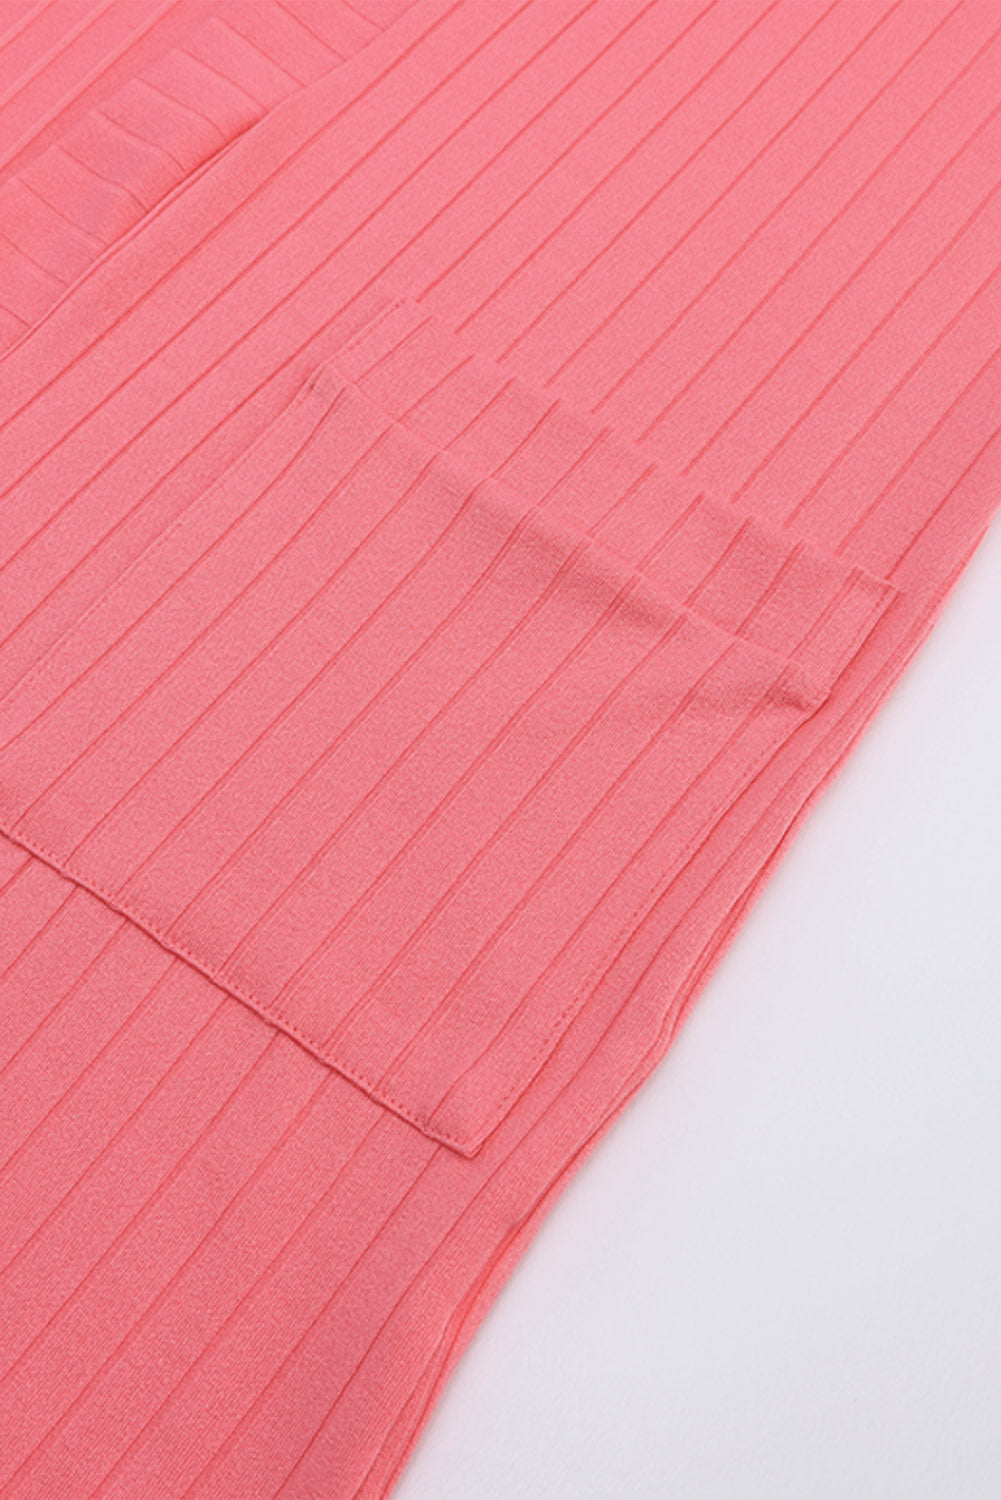 Cardigan in maglia rosa con tasca frontale aperta